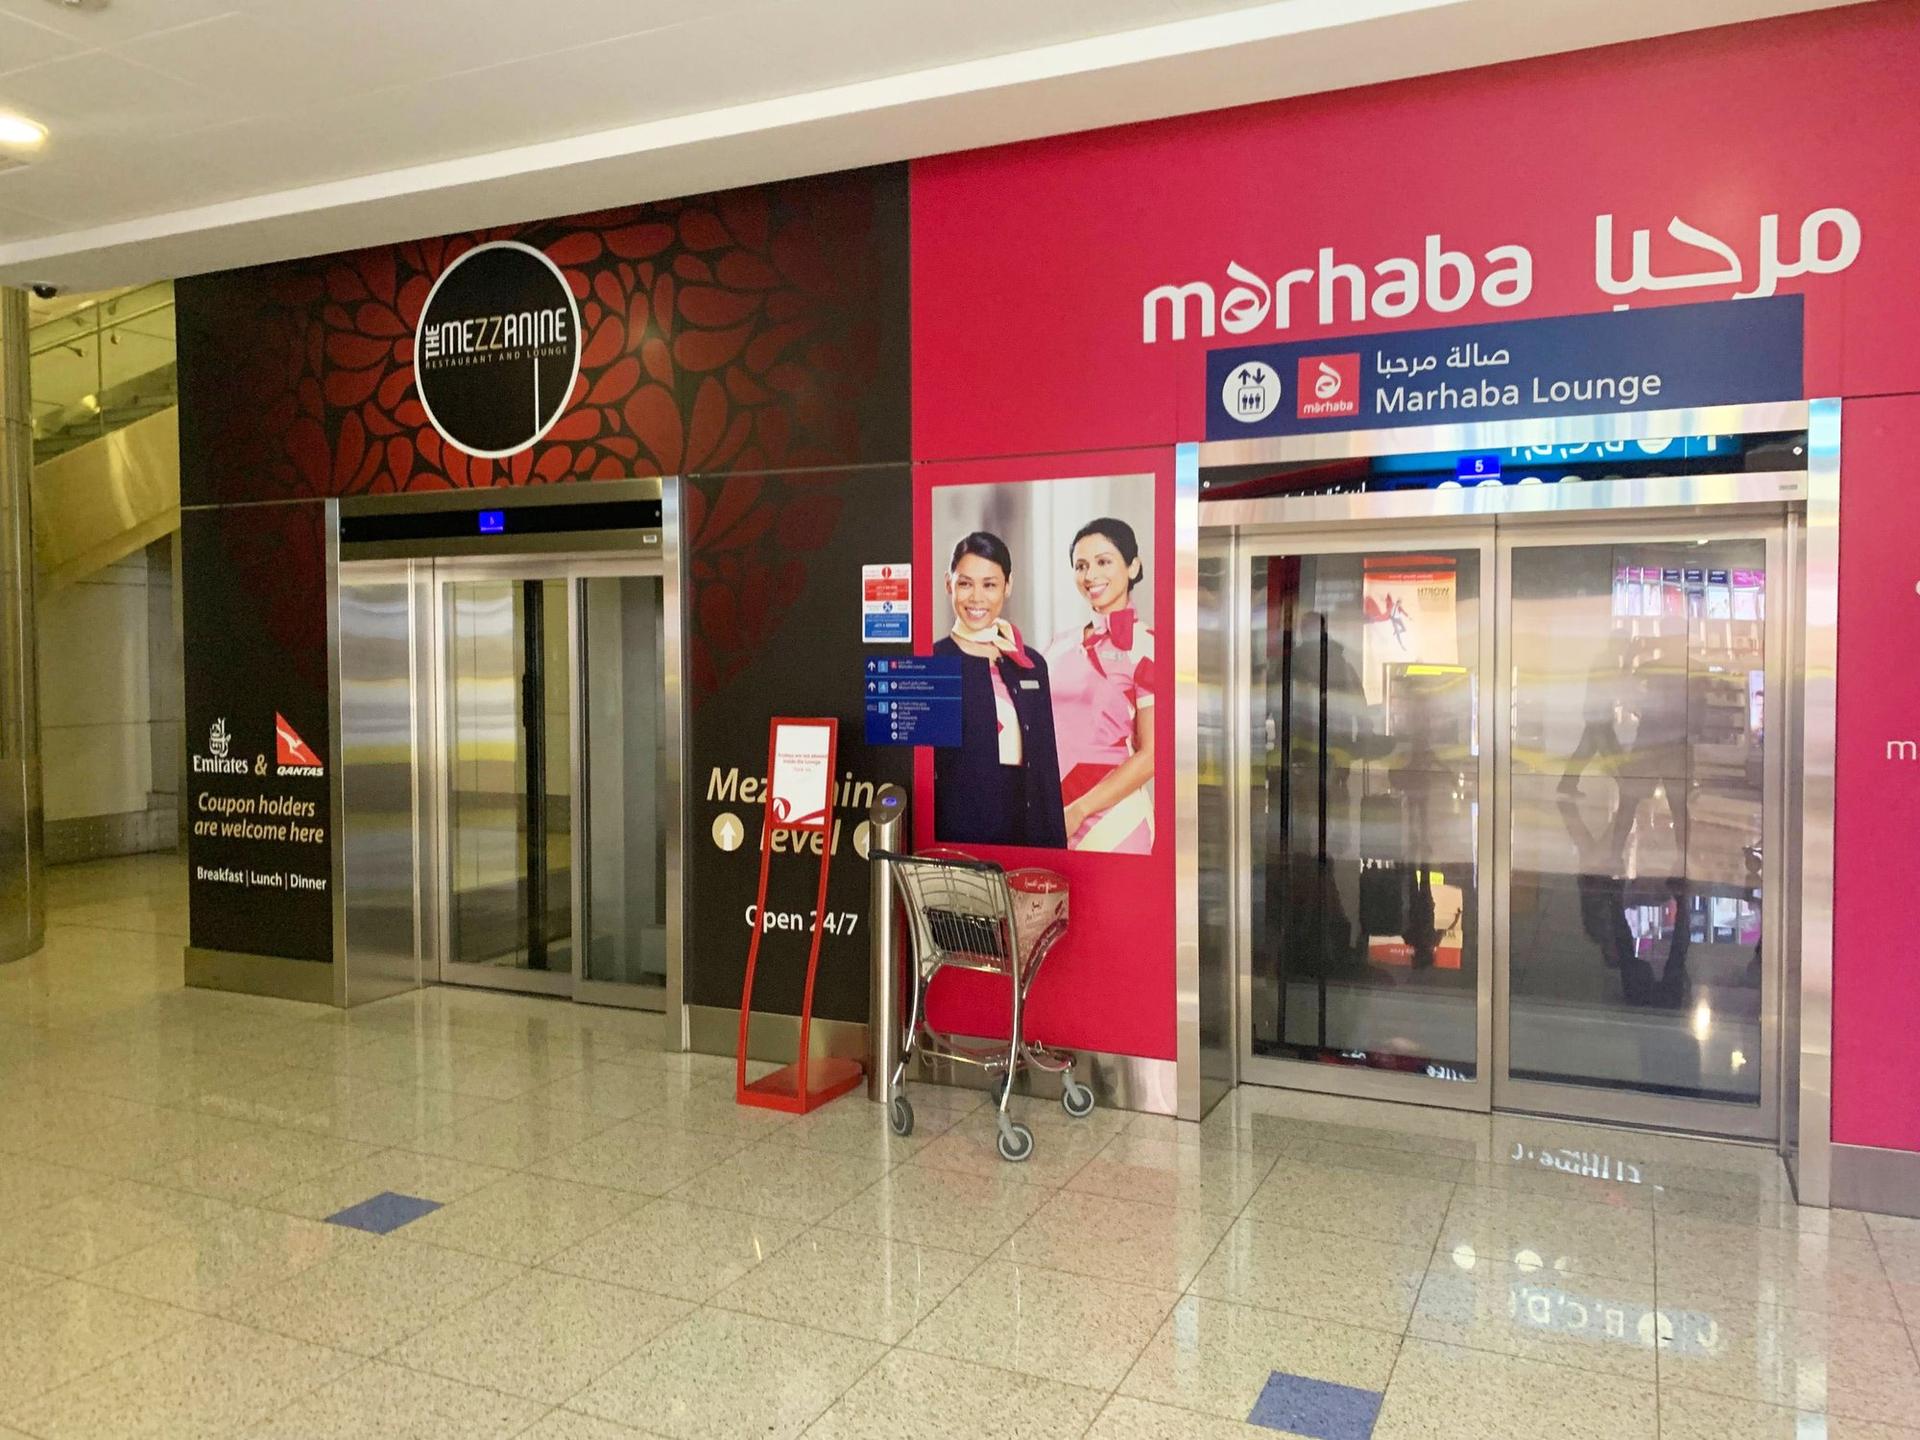 Marhaba Lounge image 31 of 40